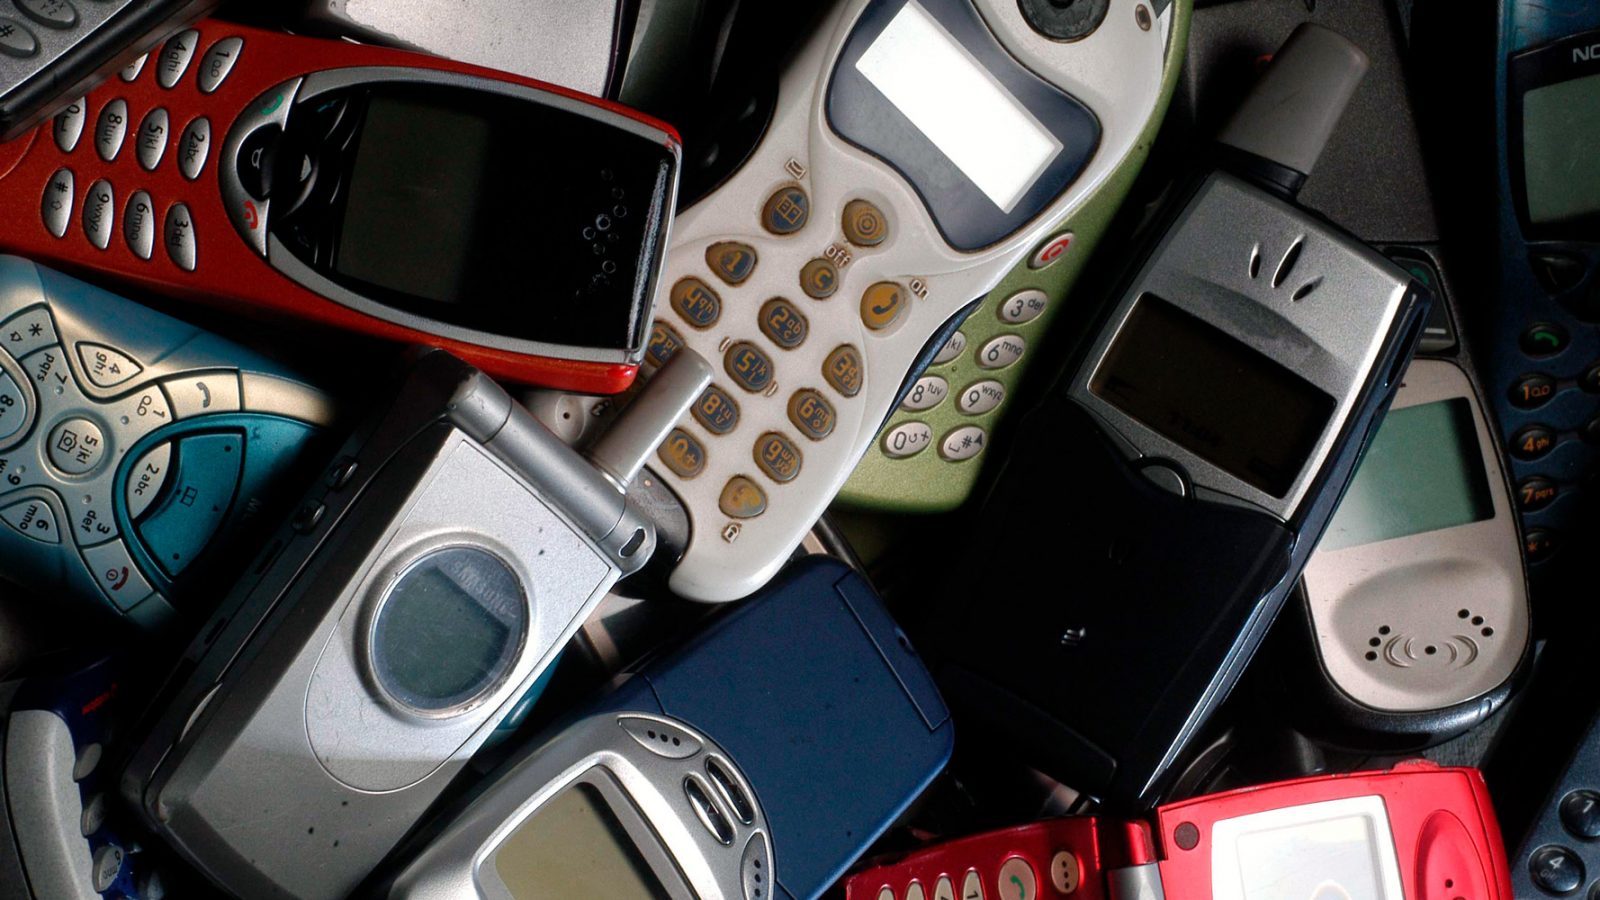 Telefoni cellulari (fonte: Imagoeconomica)